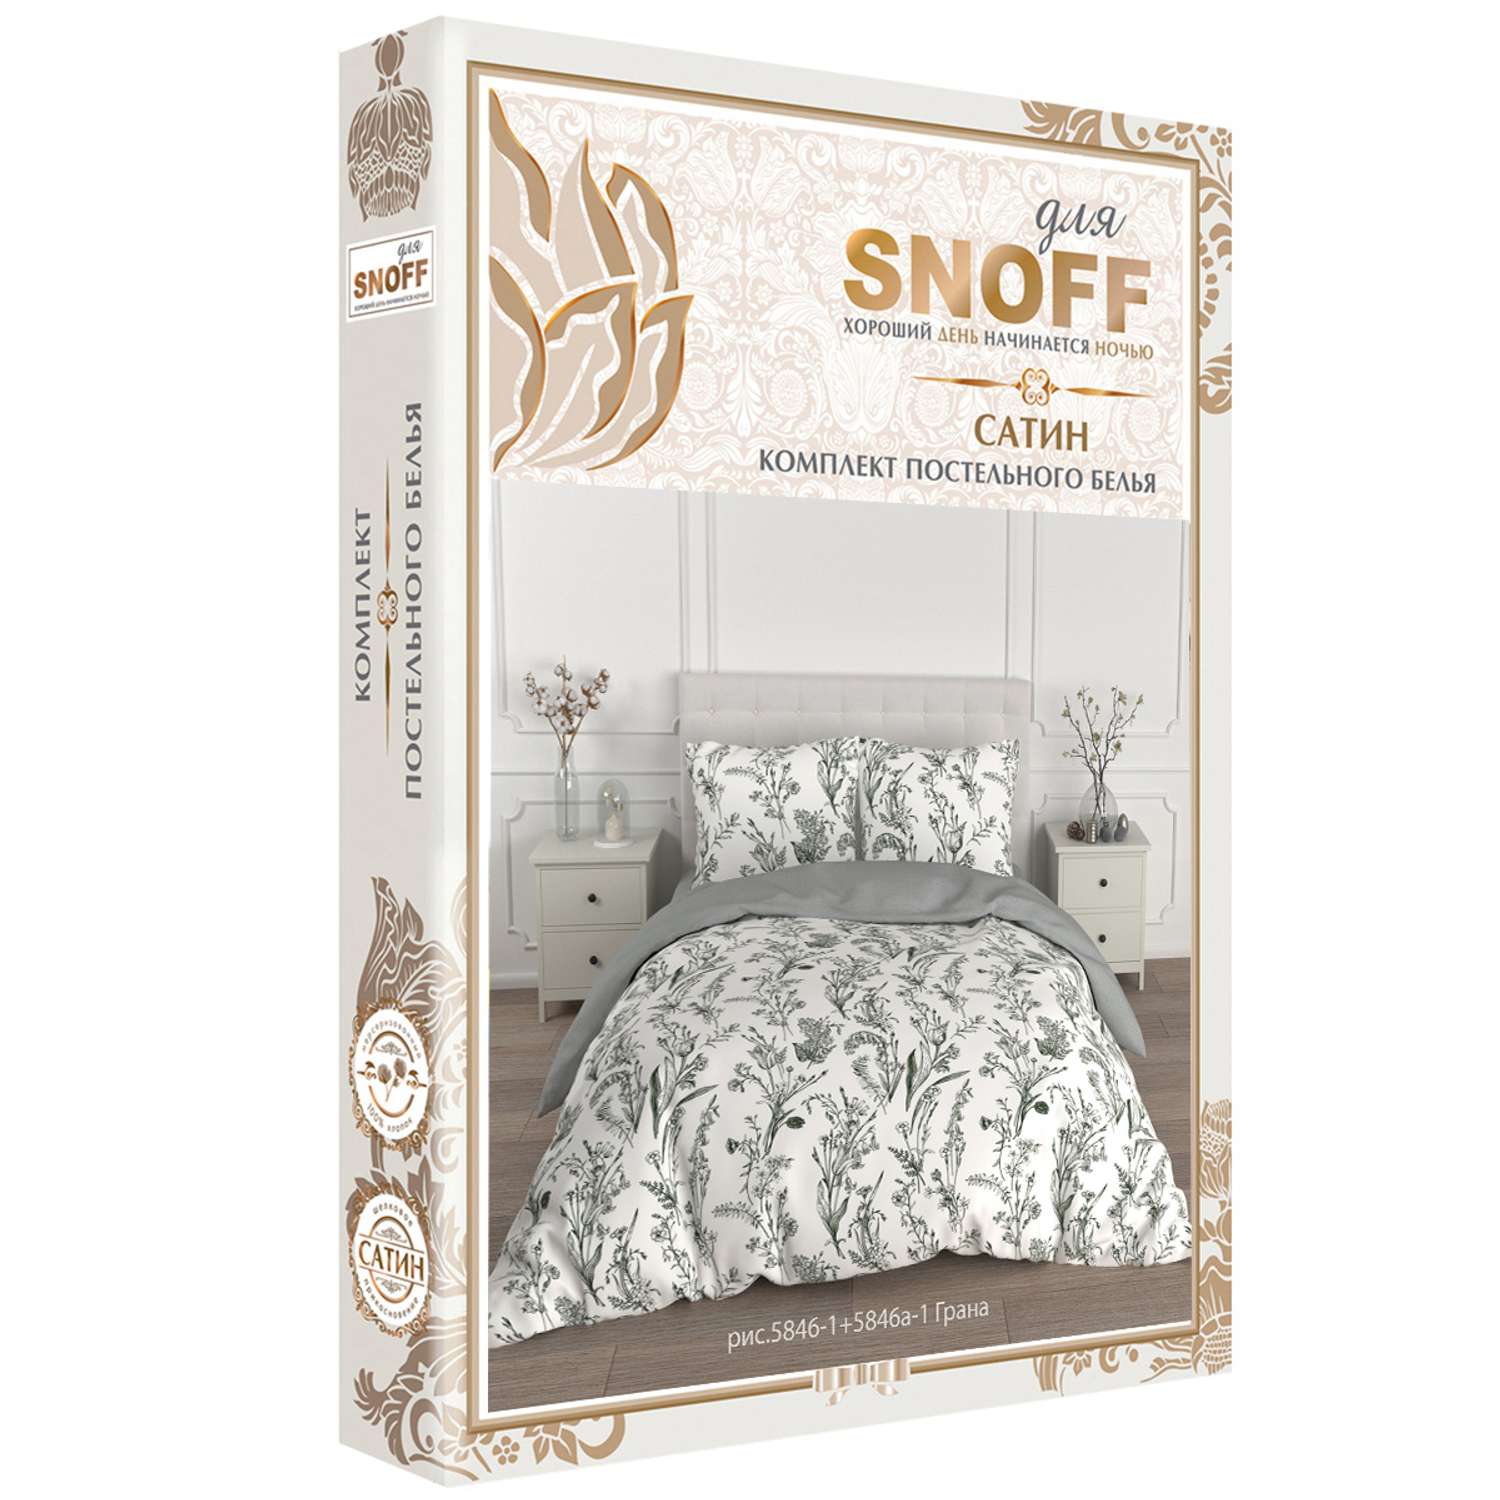 Комплект постельного белья для SNOFF Грана евро сатин - фото 7